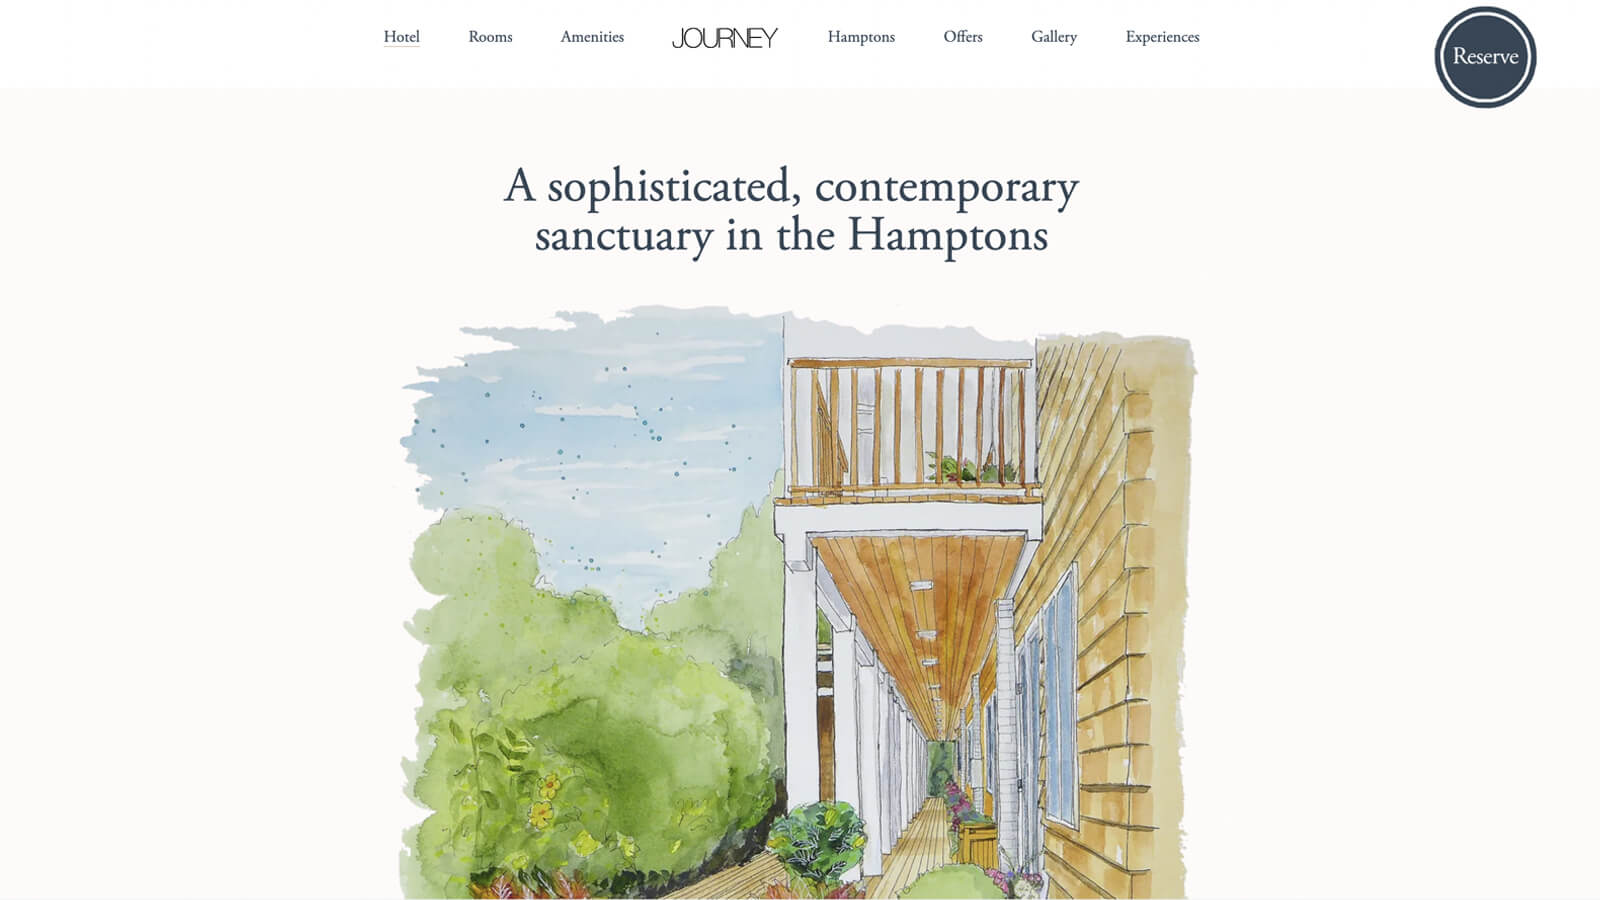 Screenshot of Journey Hotel's website